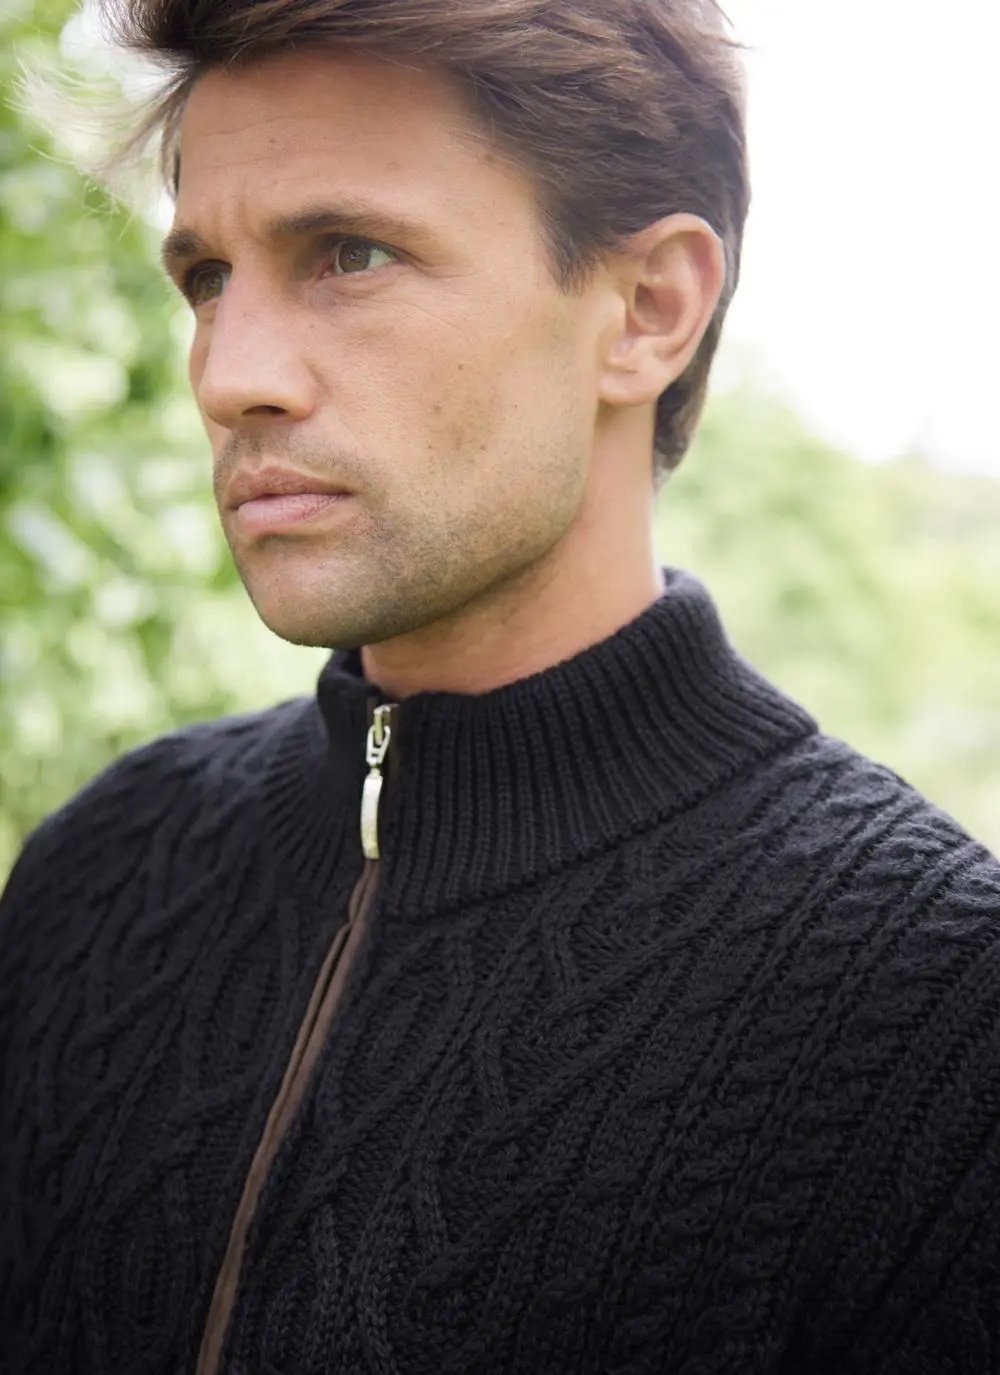 Eoin Aran Zip Cardigan in Black | Aran Sweaters for Men | Blarney